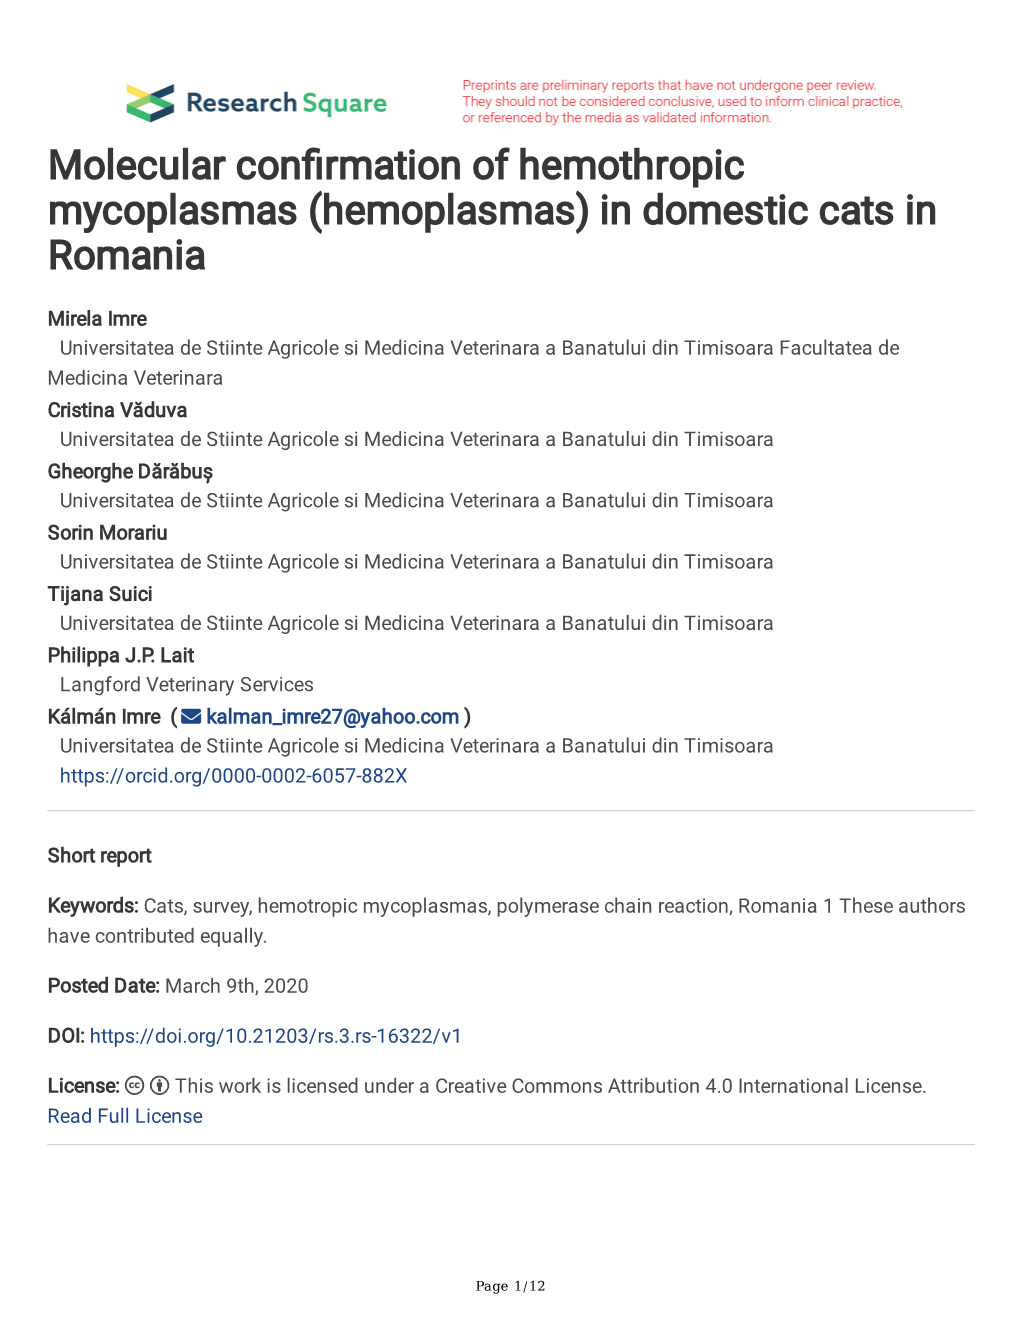 Molecular Confirmation of Hemothropic Mycoplasmas (Hemoplasmas) In